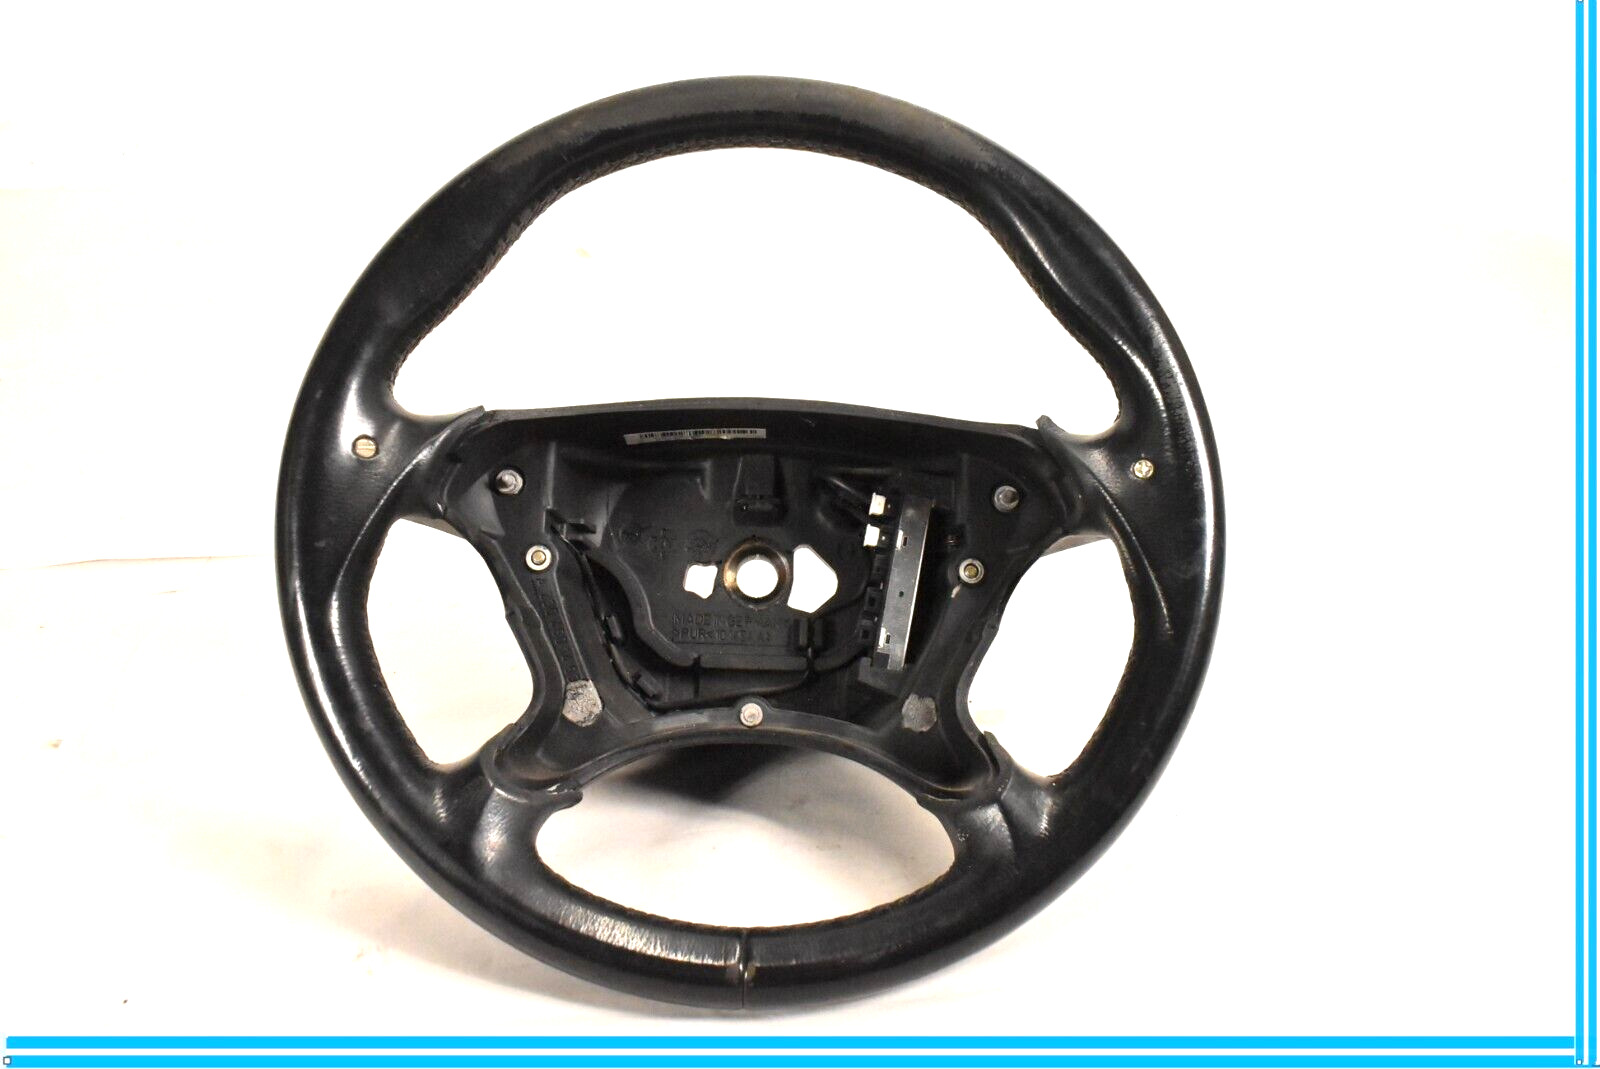 03-06 Mercedes CLK500 CLK55 AMG W209 Steering Wheel Black Leather 2194600103 Oem